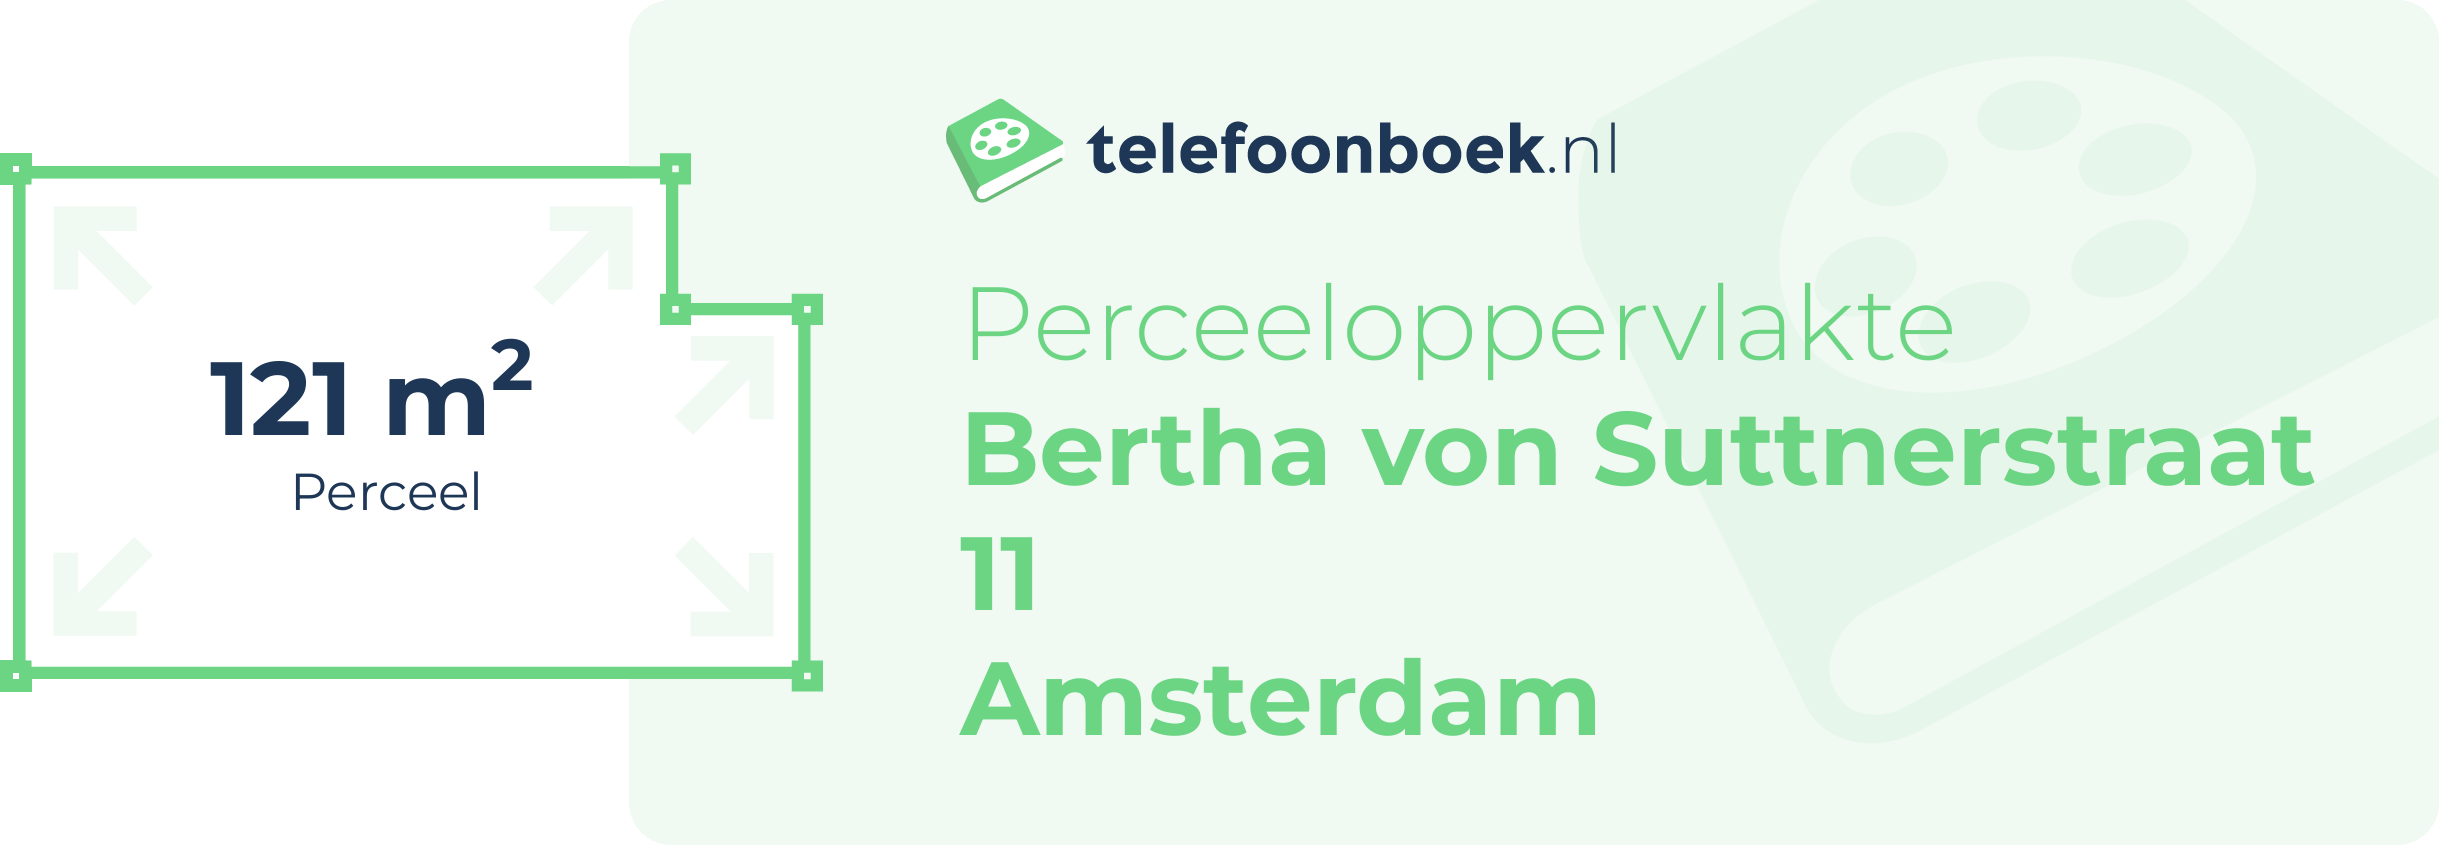 Perceeloppervlakte Bertha Von Suttnerstraat 11 Amsterdam